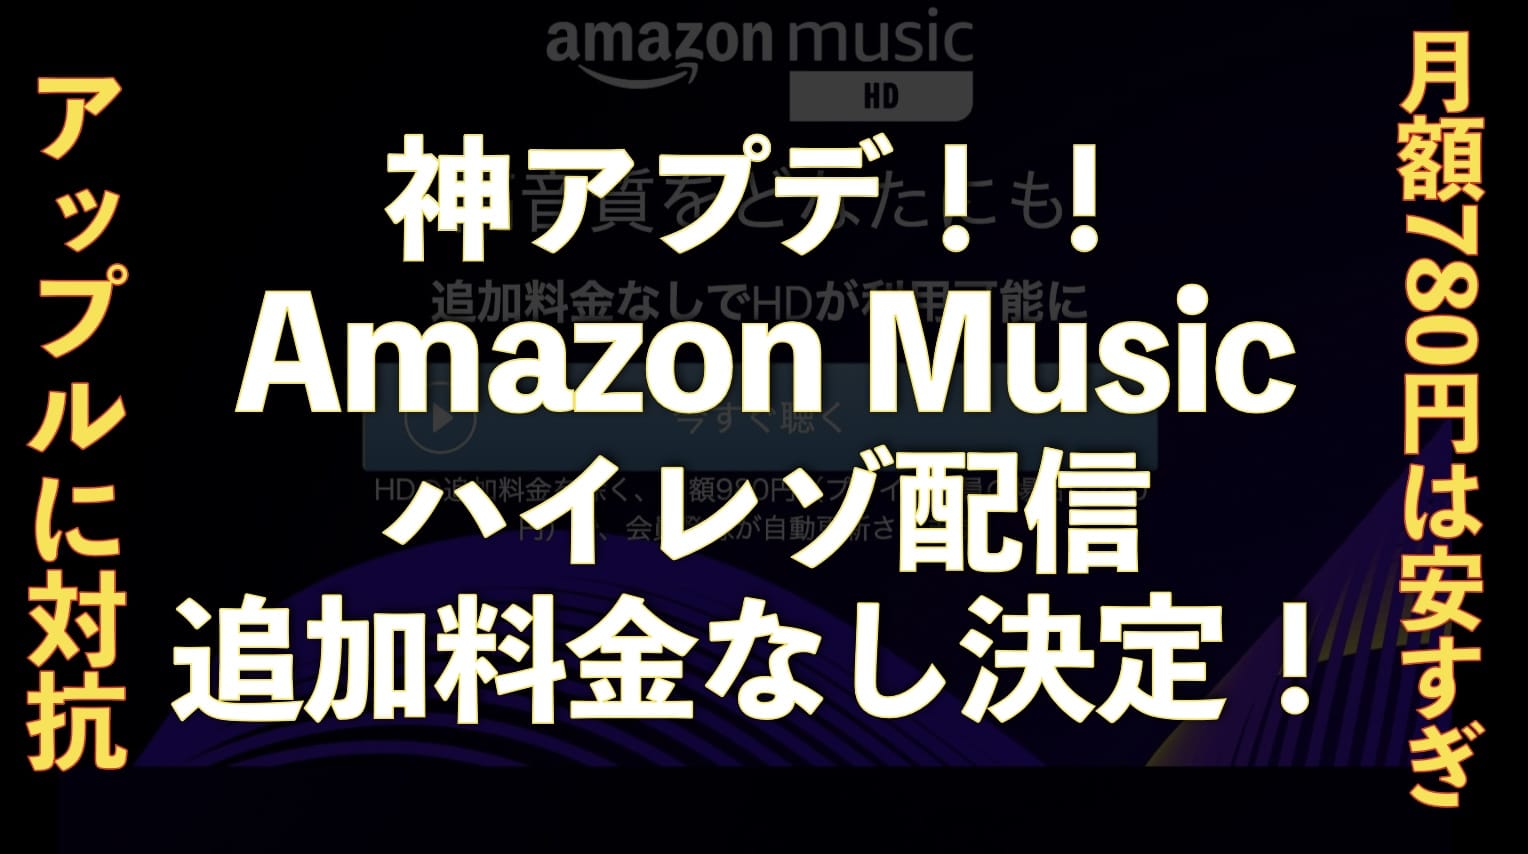 【神アプデ】Amazon music unlimitedが追加料金なしでハイレゾHD対応キタッ！【月額780円】サムネイル画像